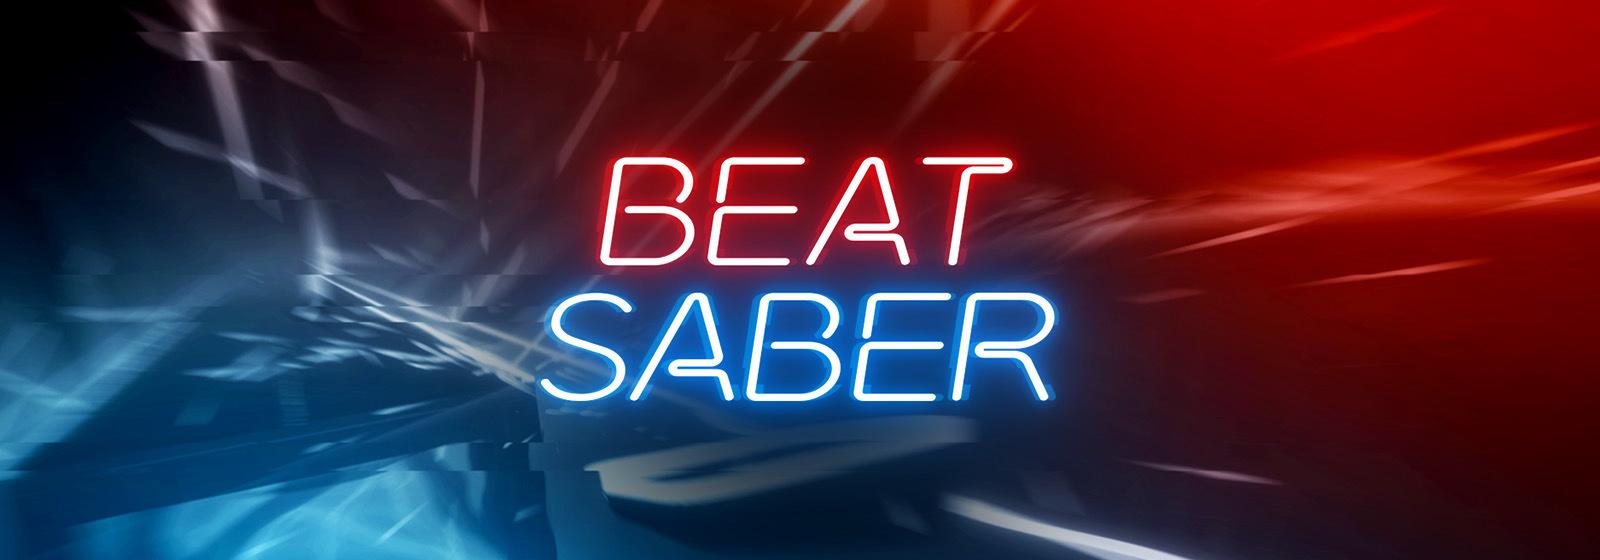 beat saber gear